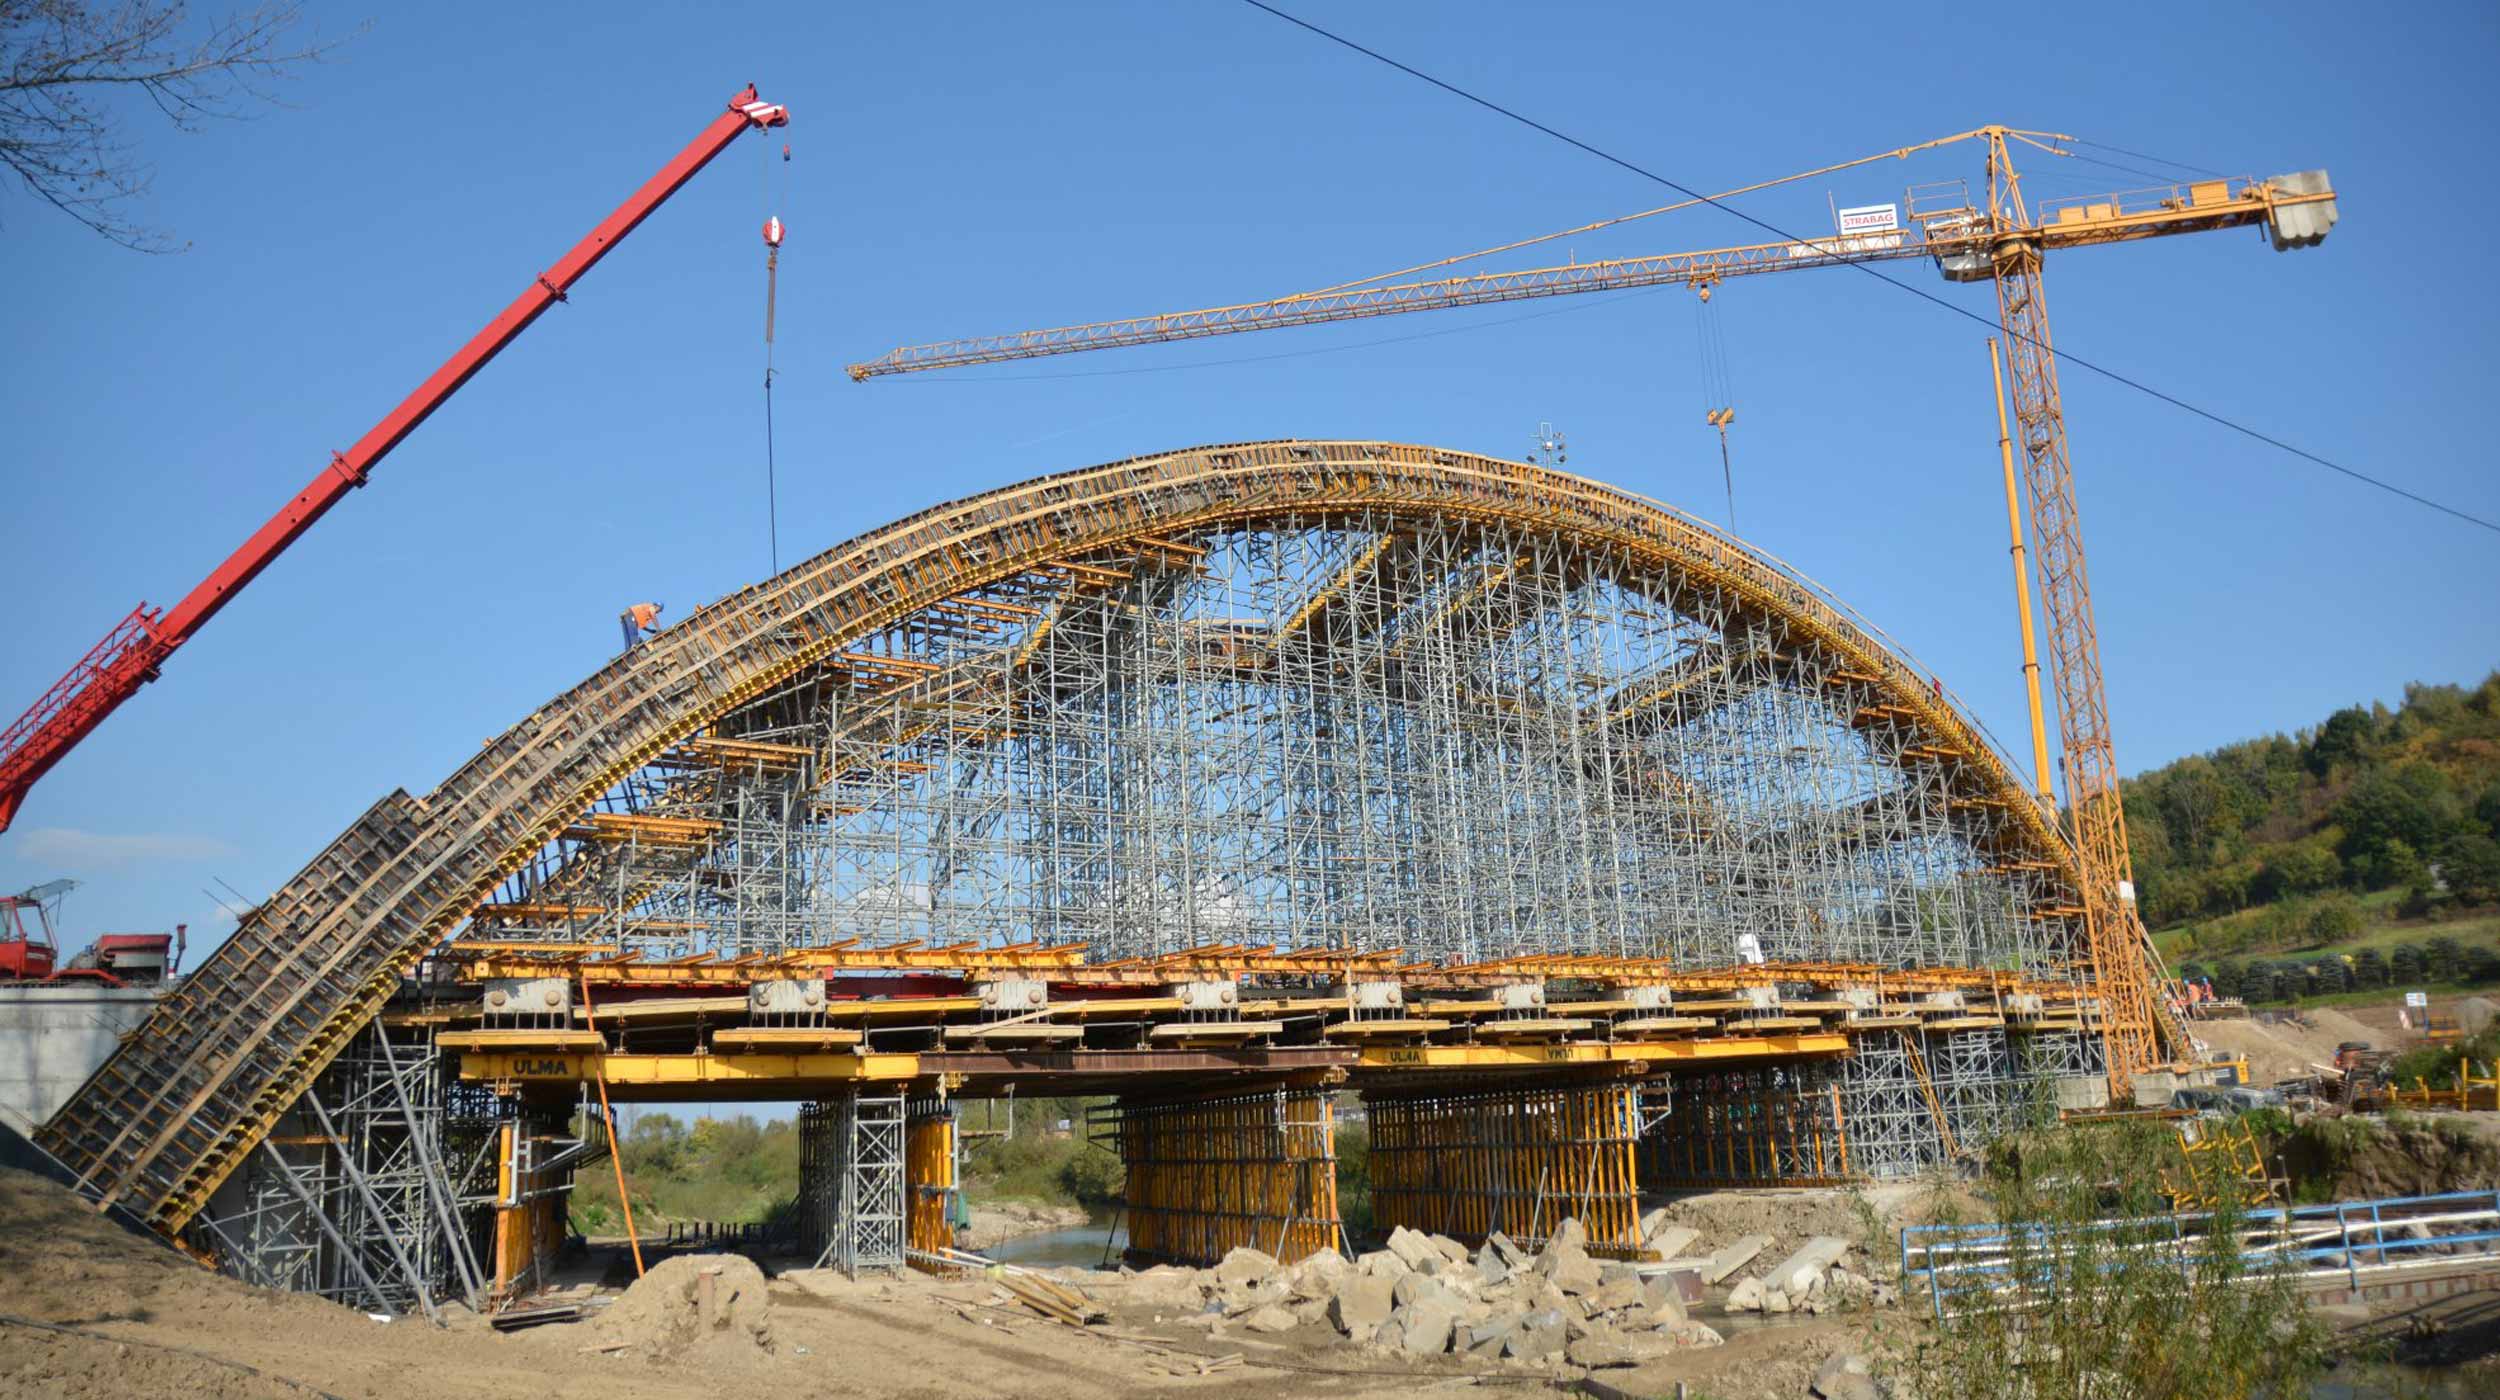 Ke stavbě tohoto mostu bylo využito podpůrných systémů různých výšek, které zajistily maximální efektivitu práce po celou dobu výstavby.